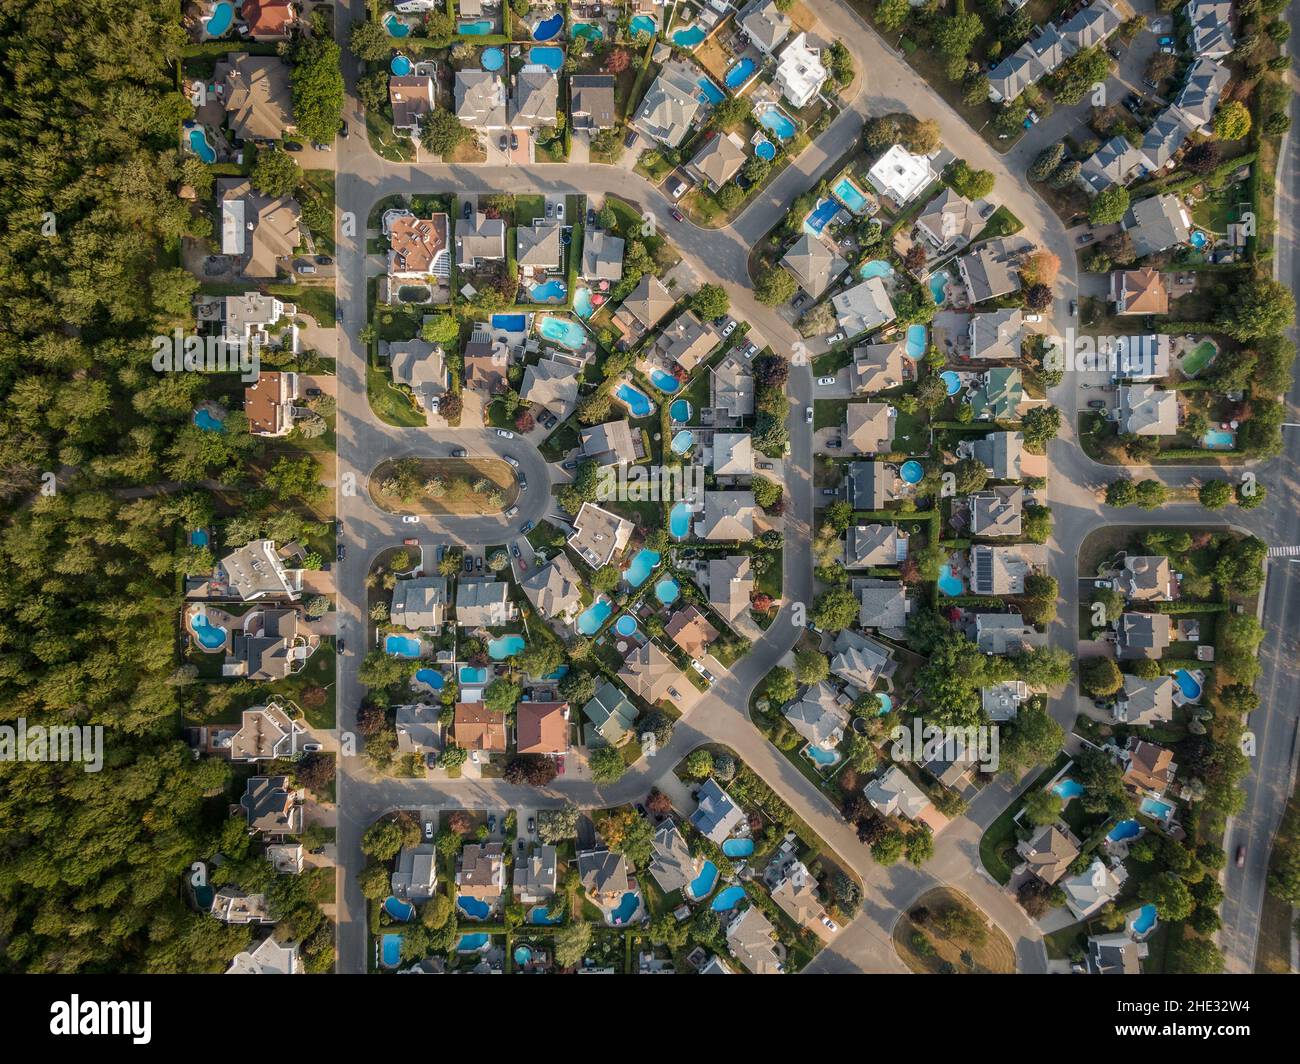 Vue aérienne de haut en bas des maisons et des rues du quartier résidentiel de Montréal, Québec, Canada.Concept immobilier, immobilier et immobilier. Banque D'Images